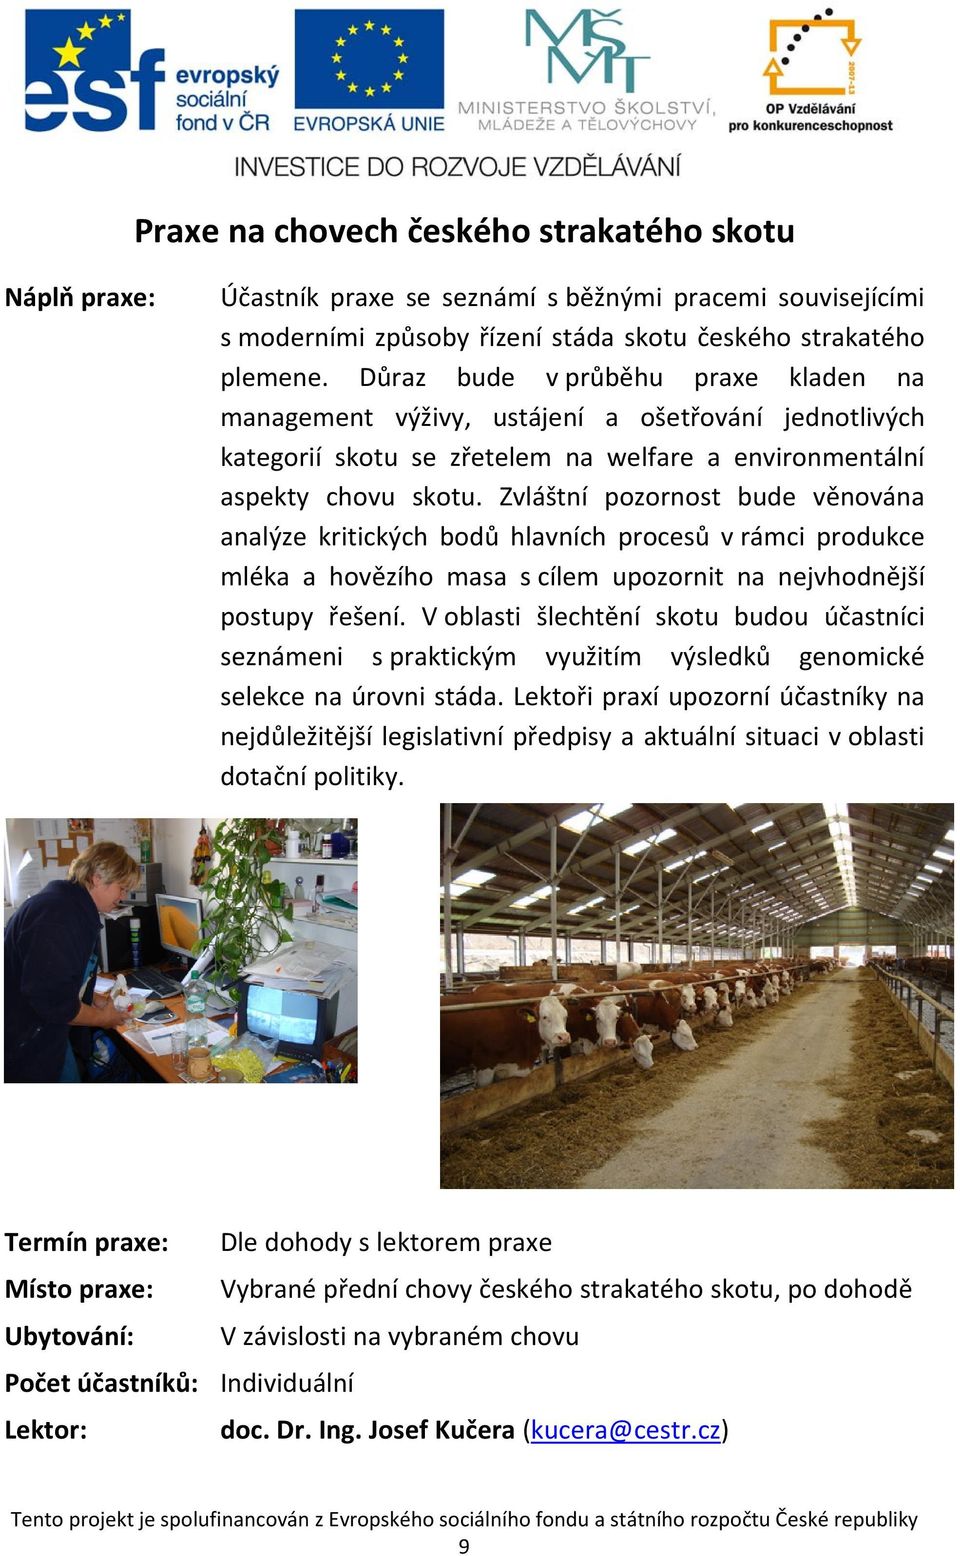 Zvláštní pozornost bude věnována analýze kritických bodů hlavních procesů v rámci produkce mléka a hovězího masa s cílem upozornit na nejvhodnější postupy řešení.